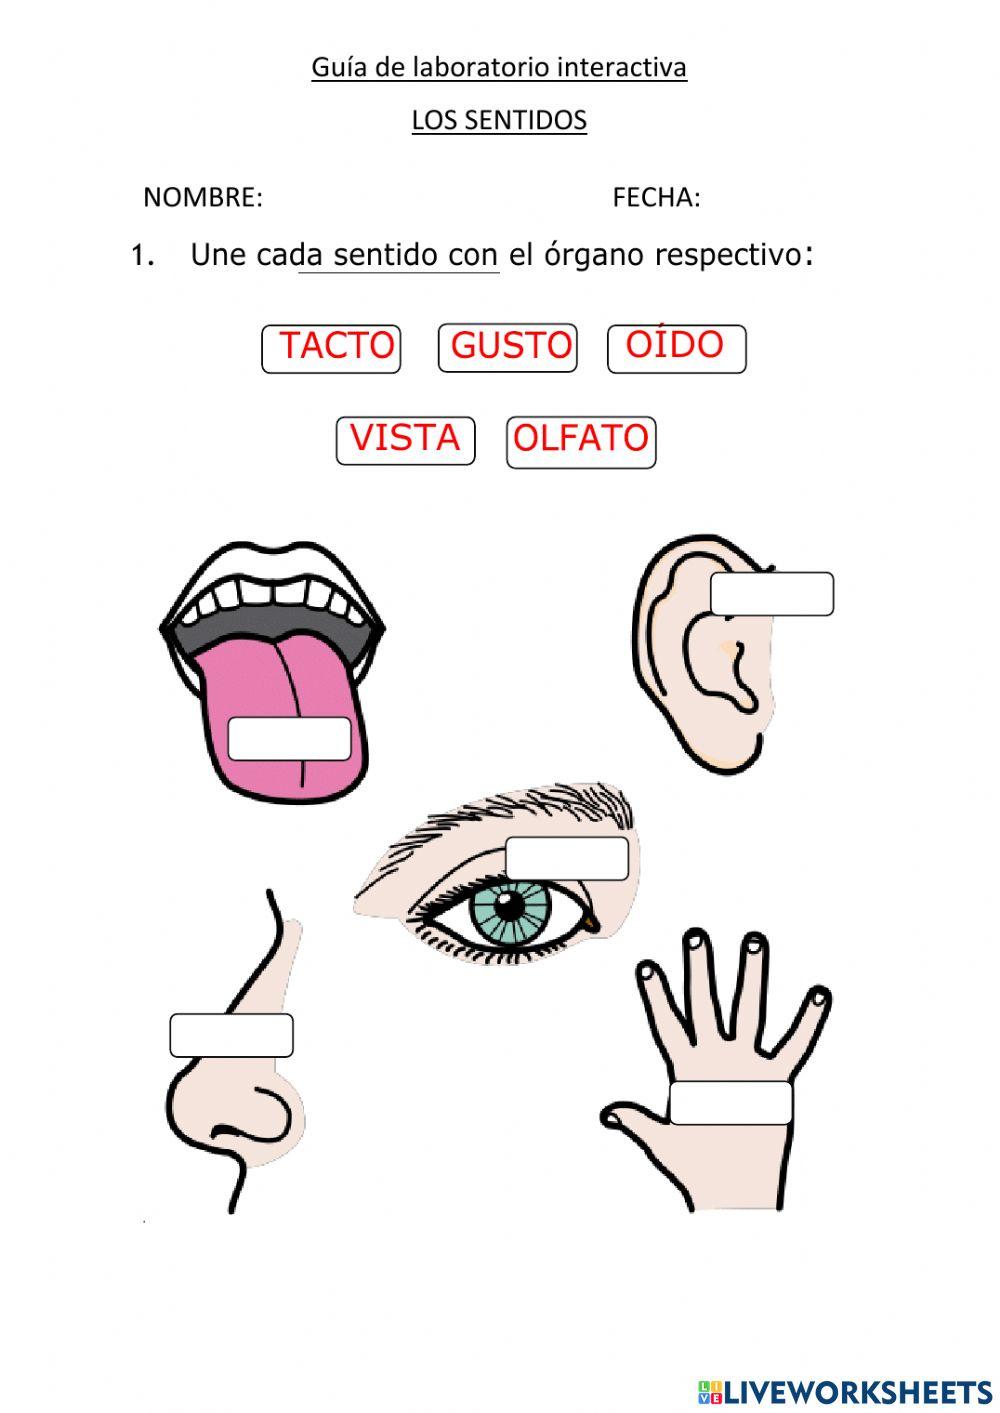 Guía interactiva: los sentidos